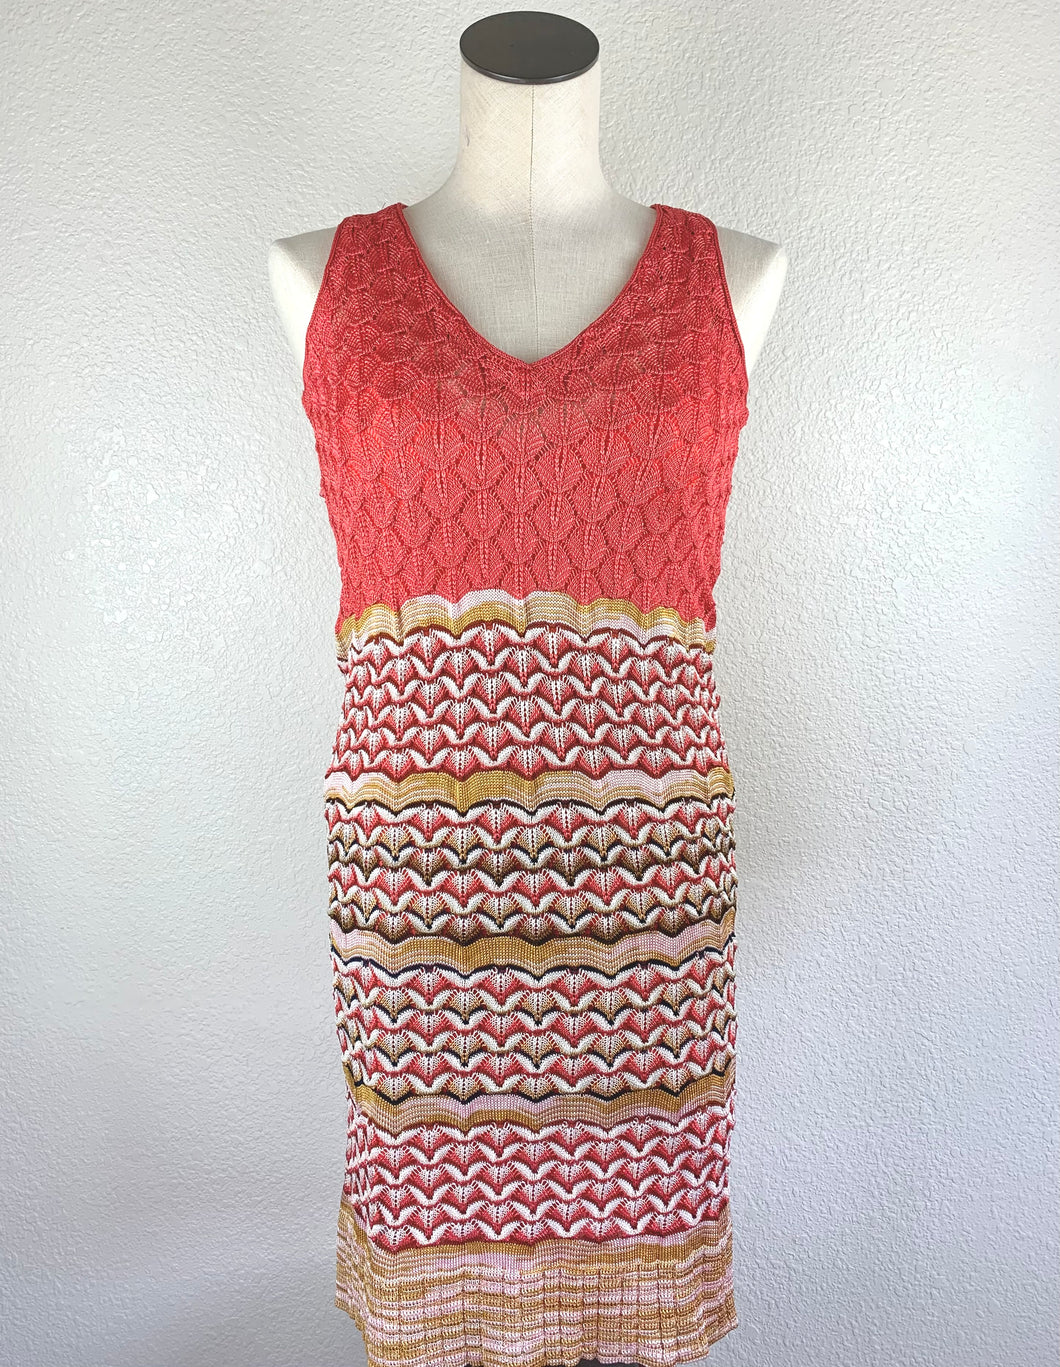 Missoni V-neck Knit Dress size 38/4